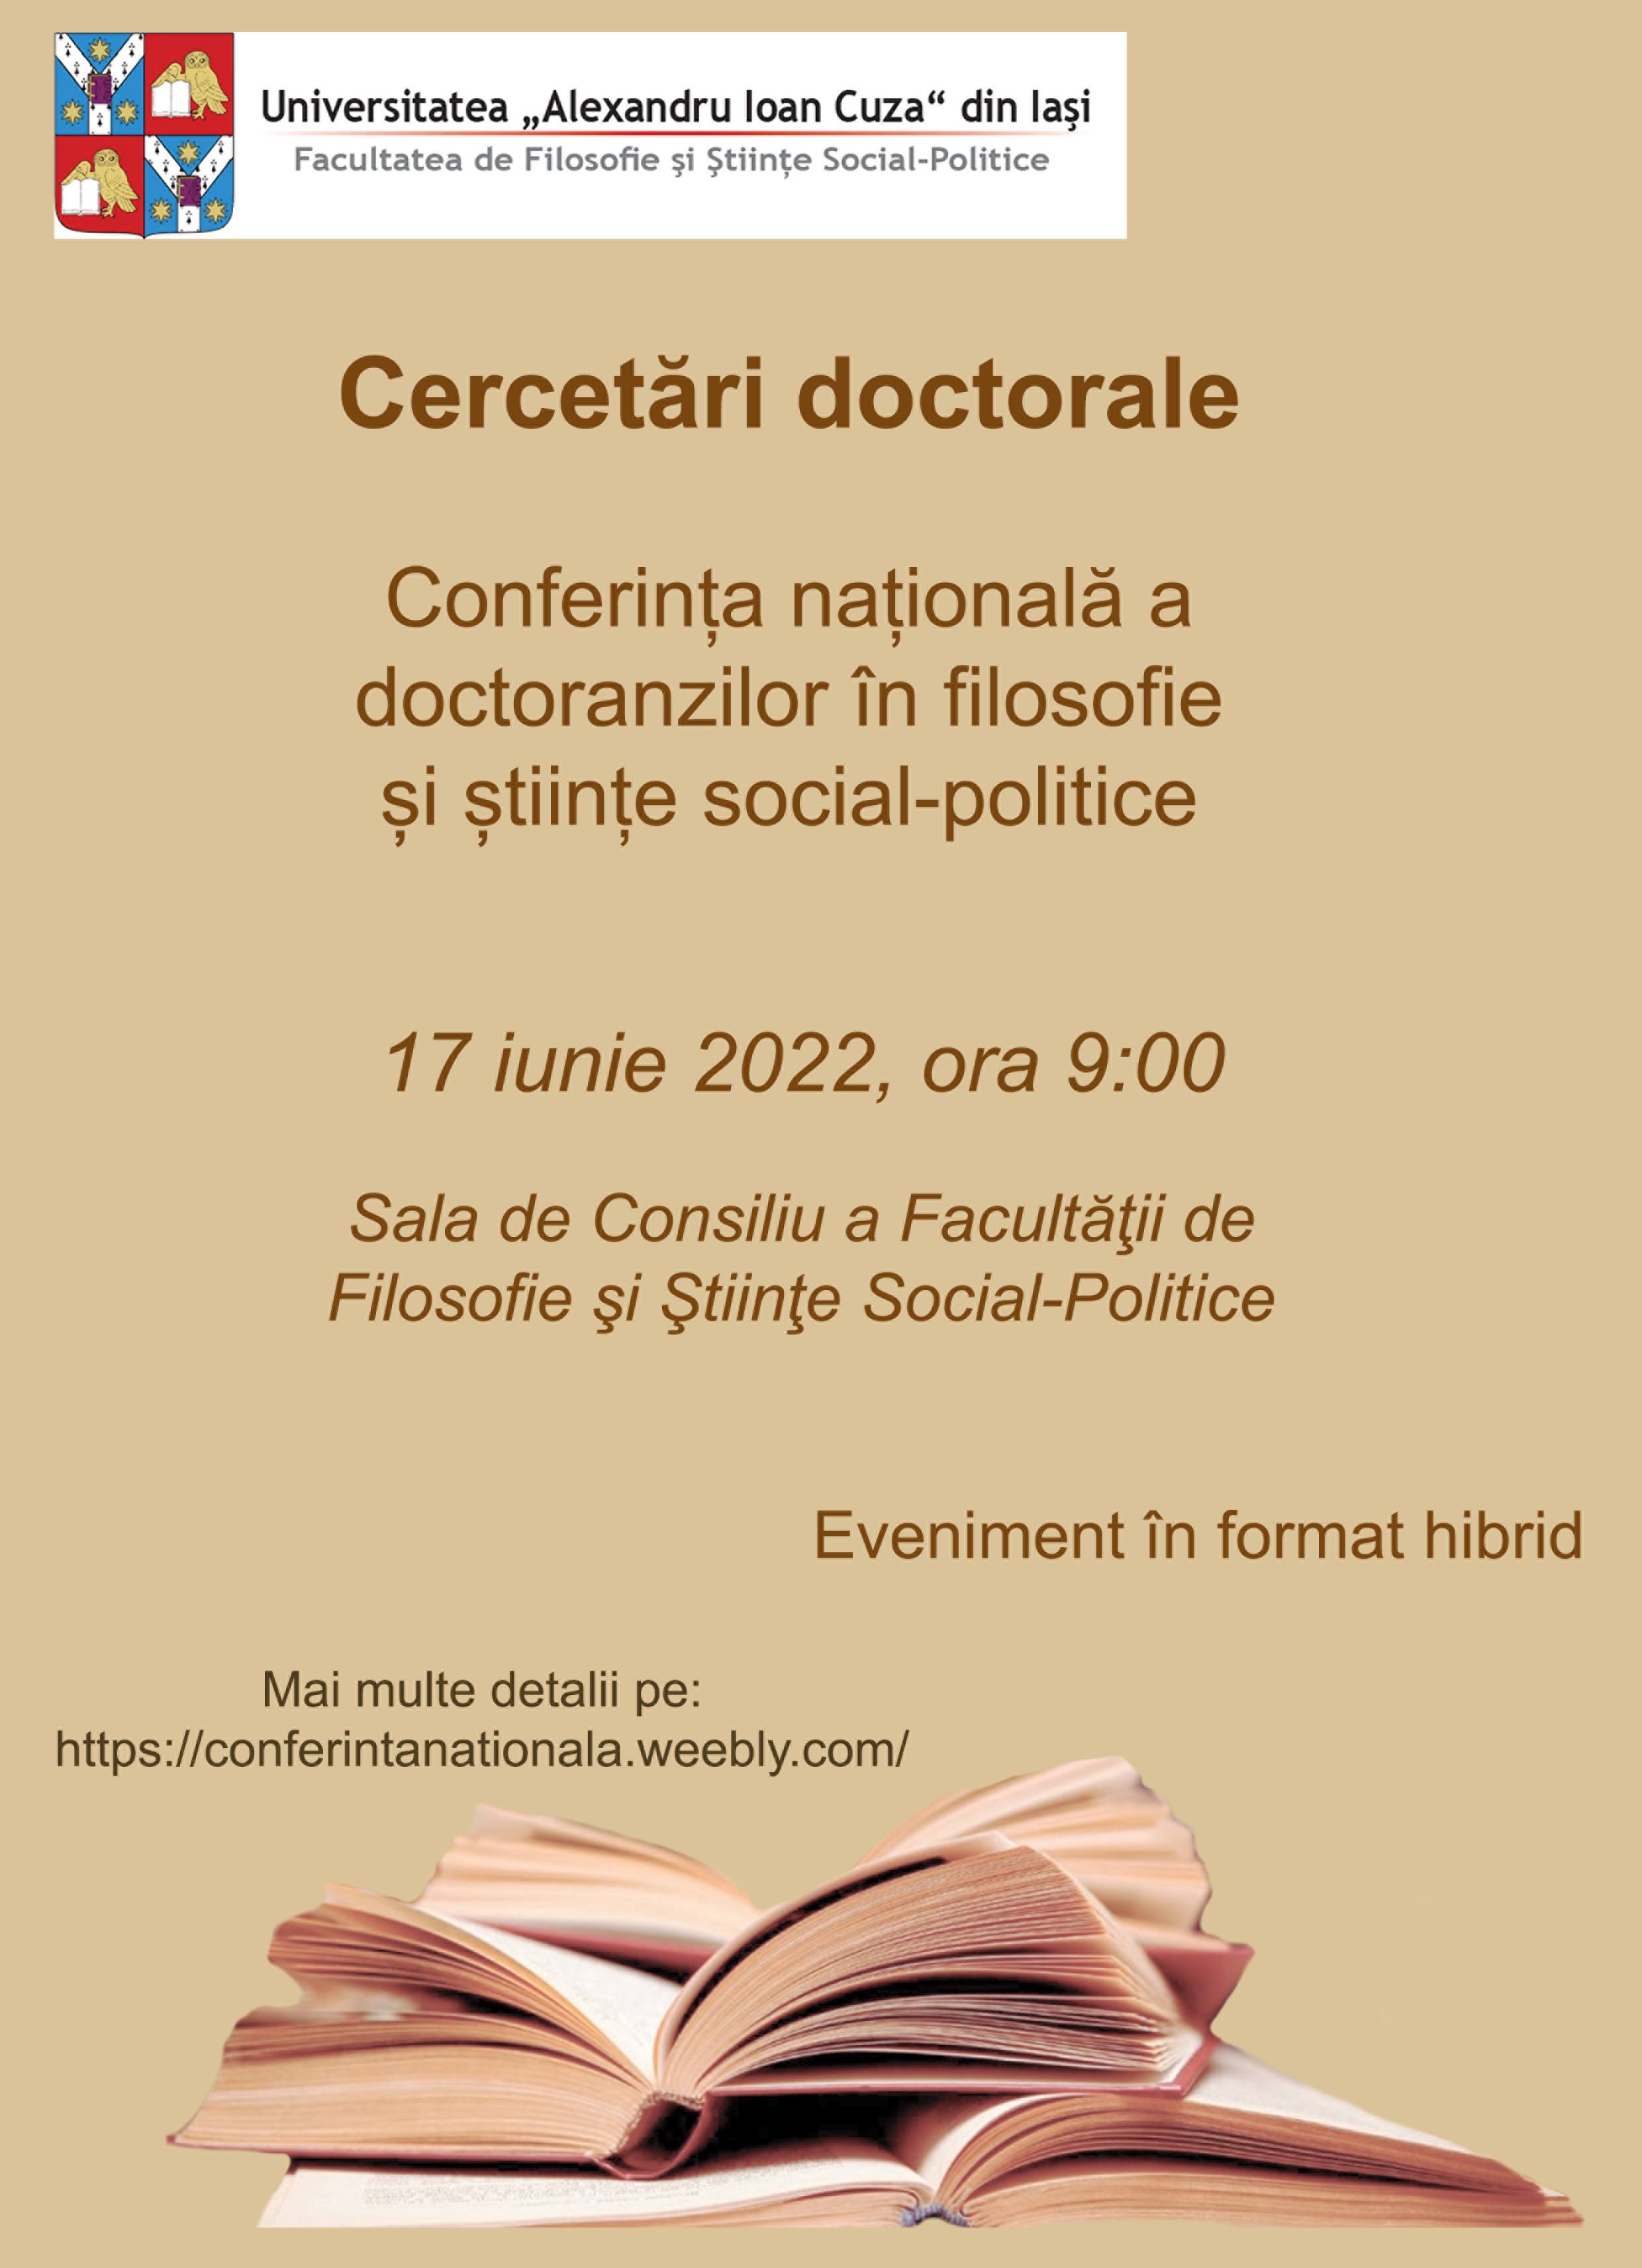  Conferinţa naţională a doctoranzilor în filosofie şi ştiinţe social-politice